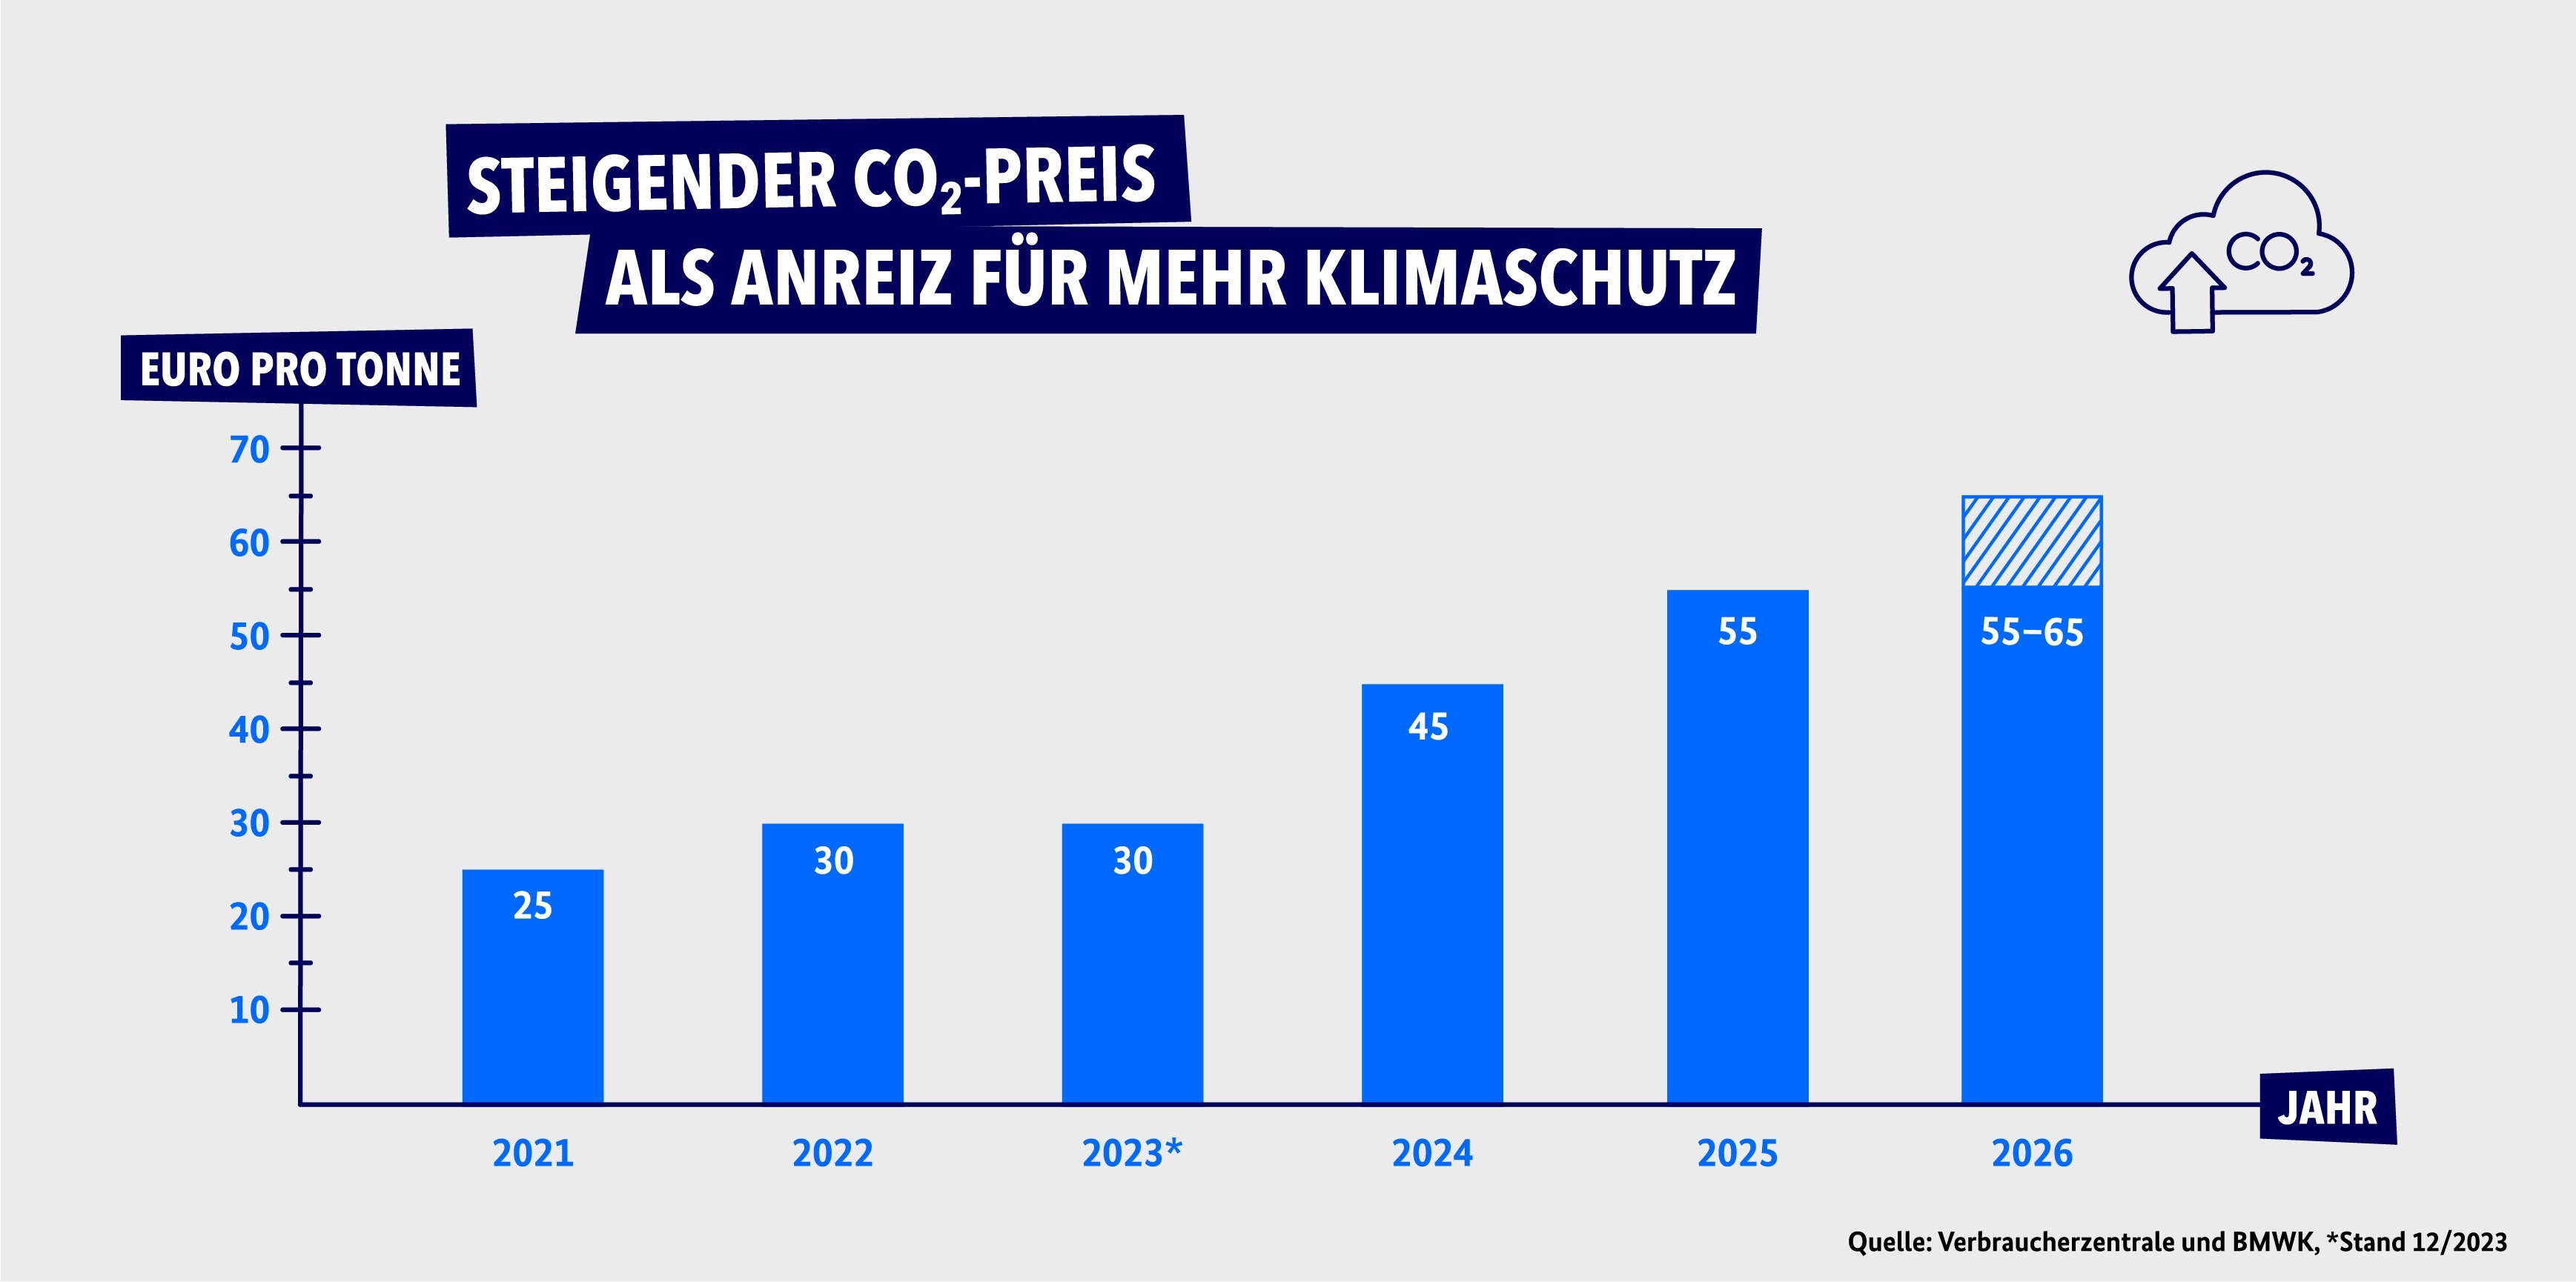 CO₂-Preis-Entwicklung von 2021 bis 2026